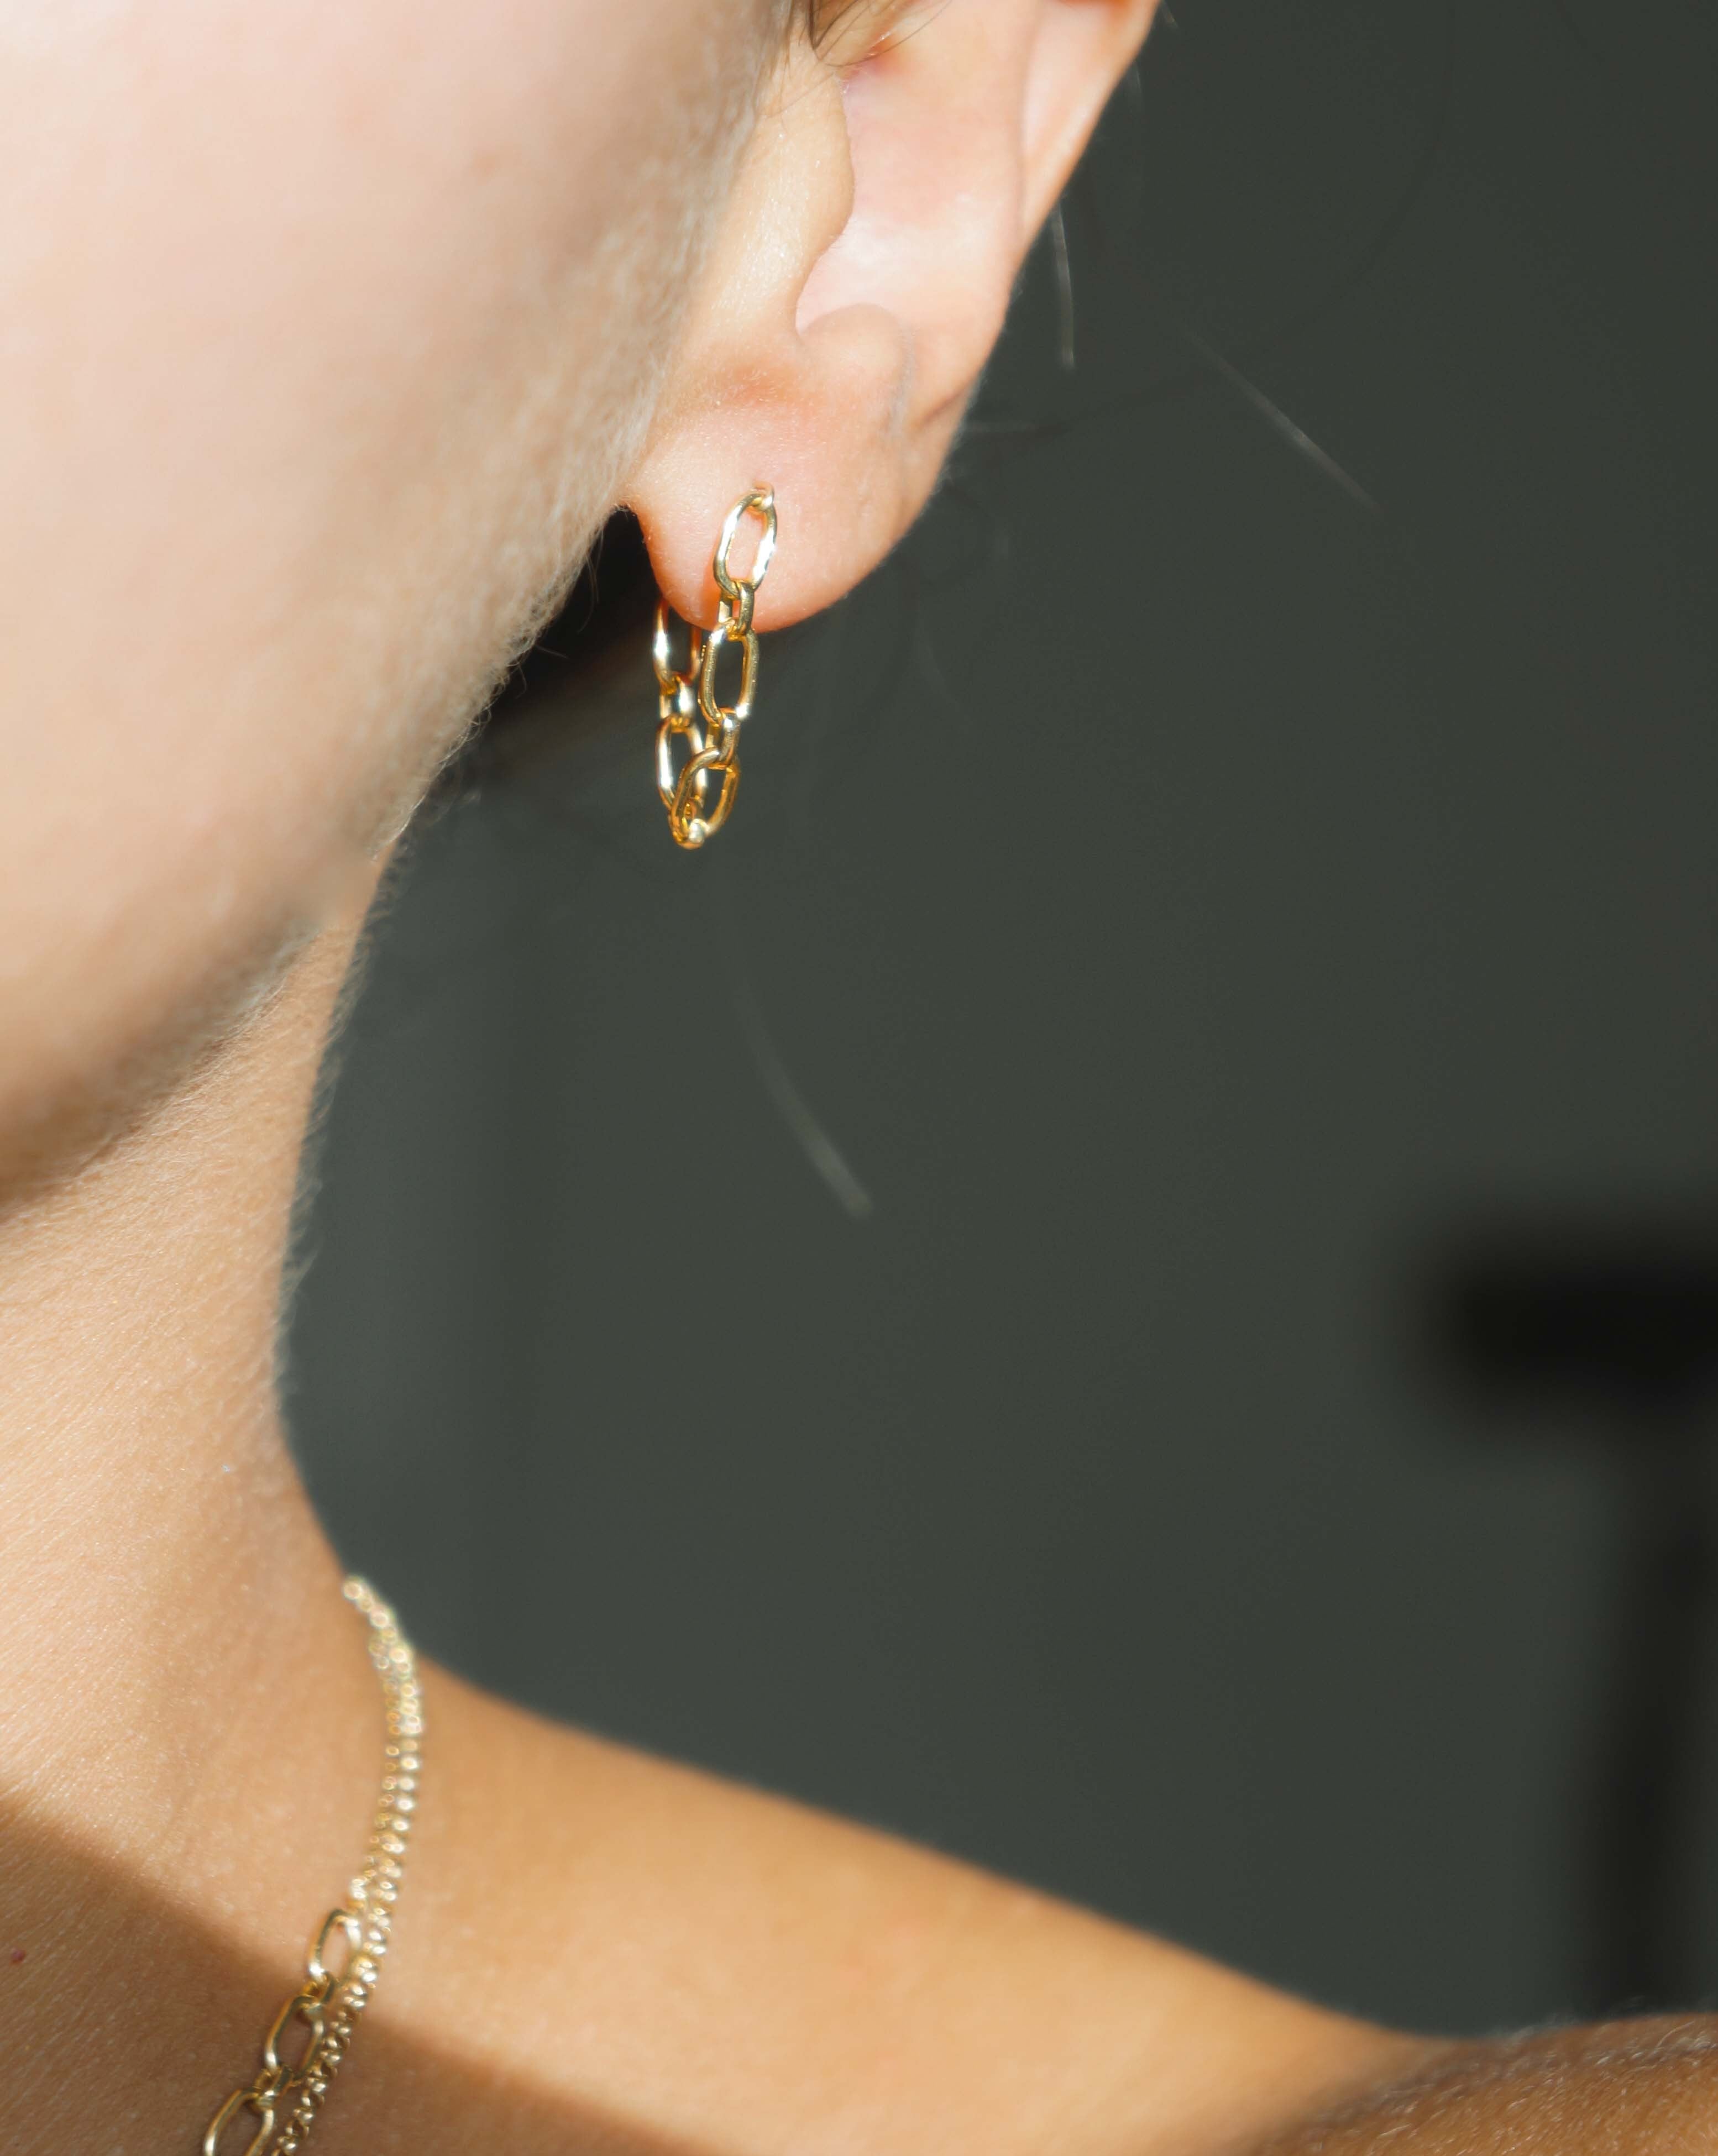 Sita Earrings by KOZAKH. Chain dangling earrings in 14K Gold Filled.